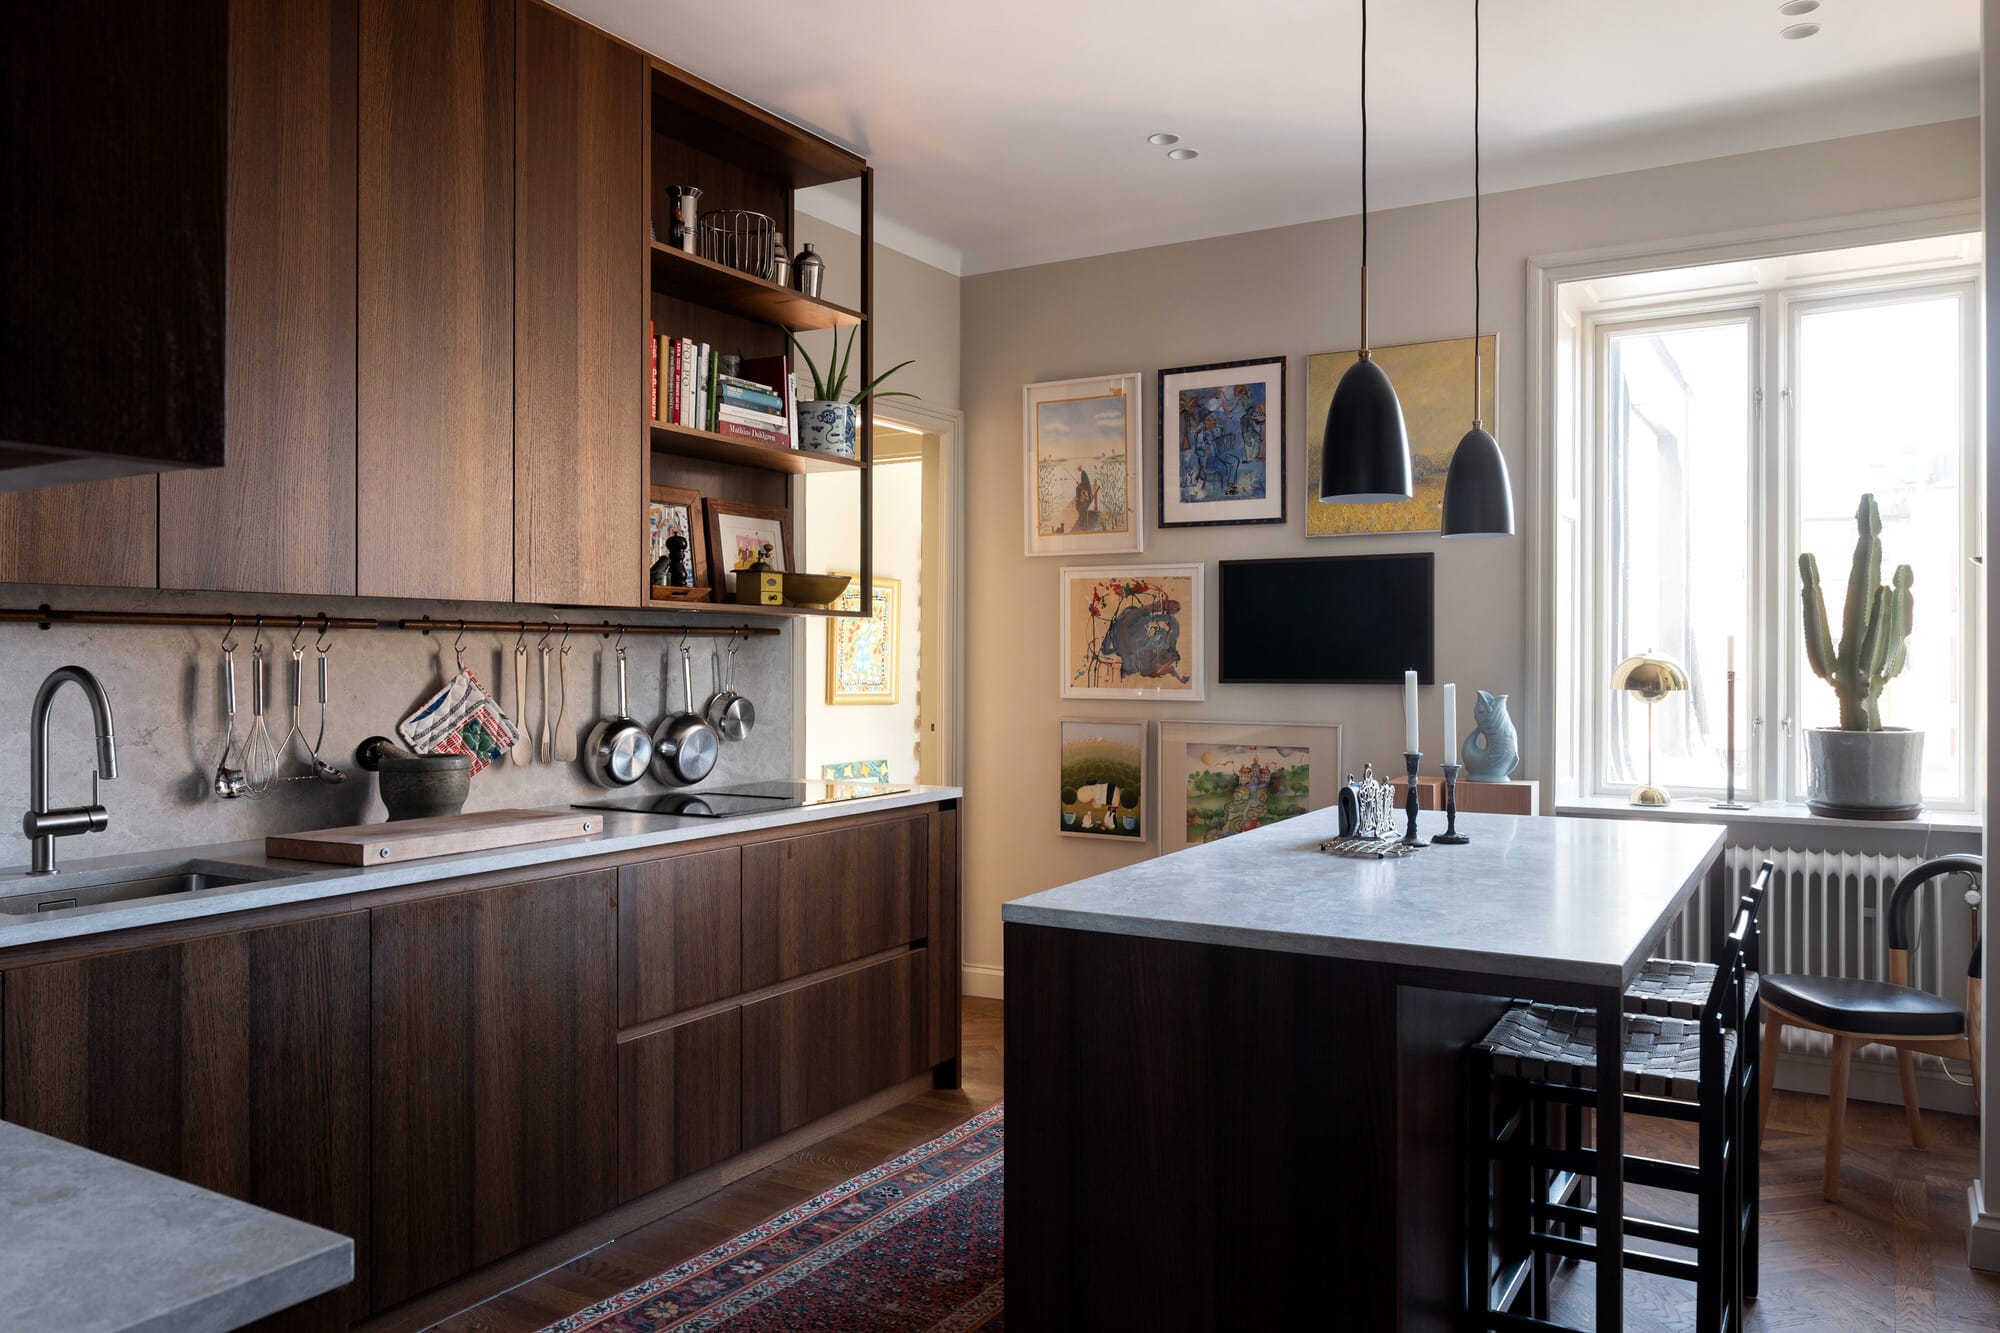 Stunning Kitchen Cabinets Design  Walnut kitchen cabinets, Walnut kitchen, Kitchen  cabinets